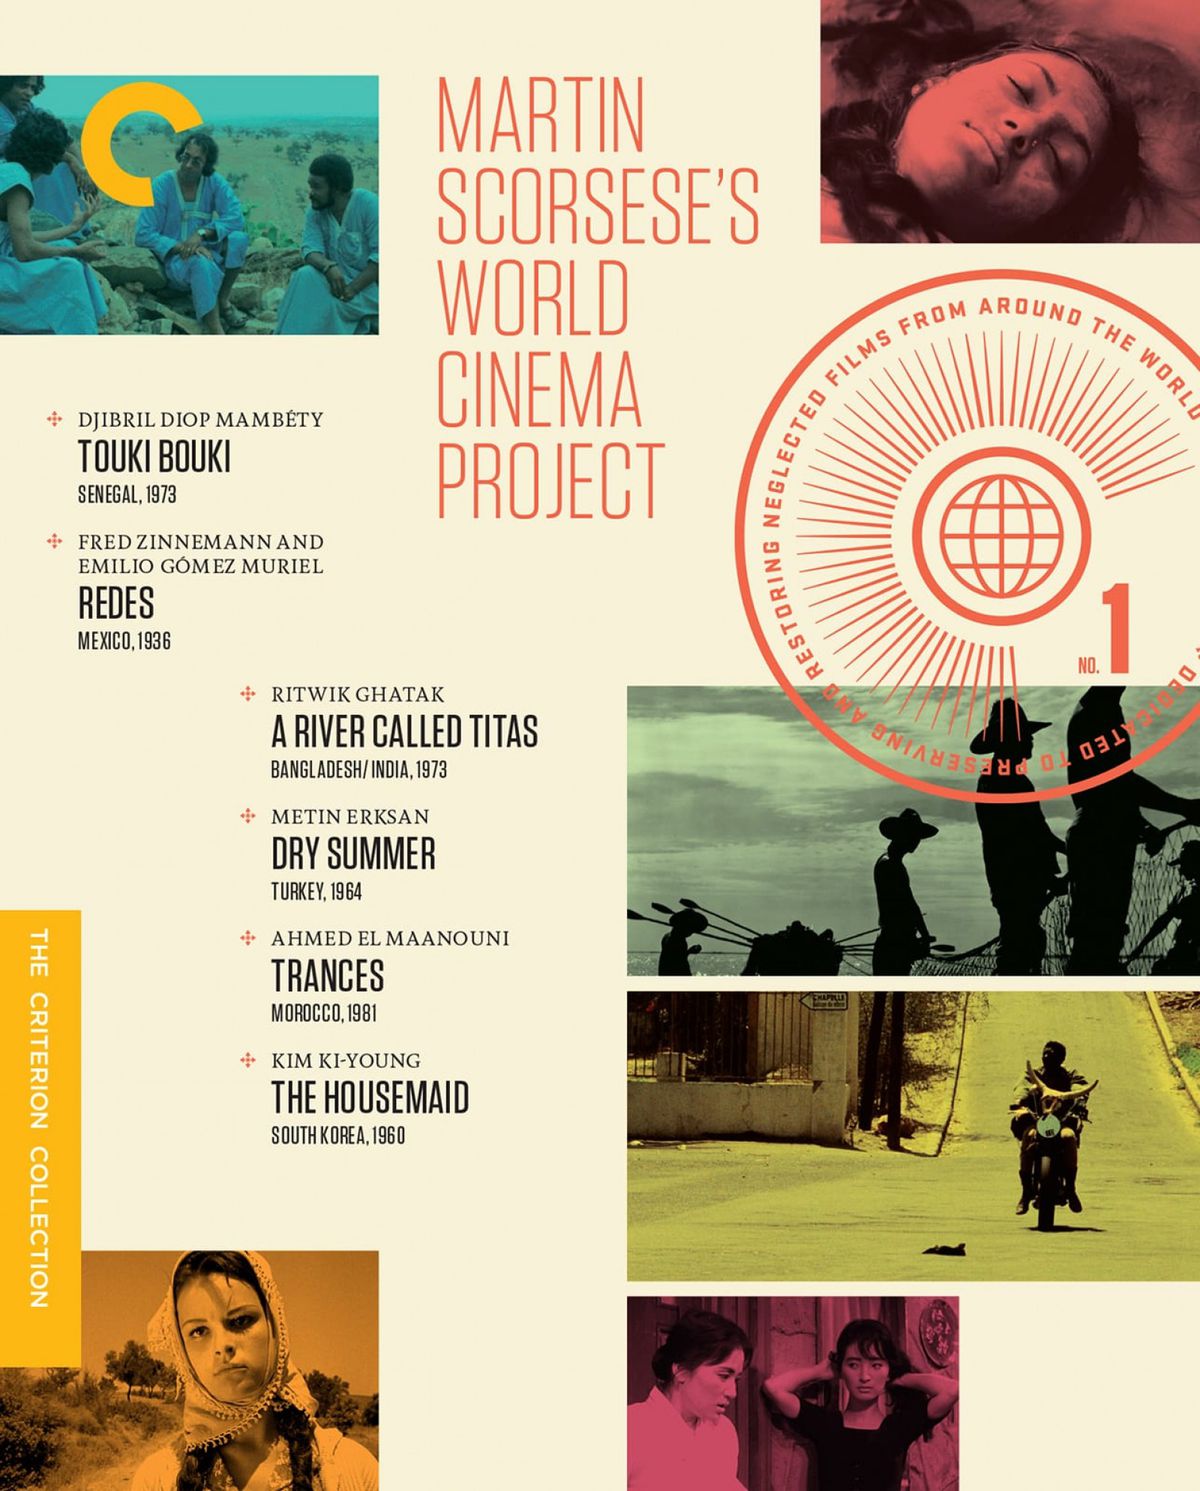 Copertina del cofanetto Criterion Collection del World Cinema Project di Martin Scorsese.